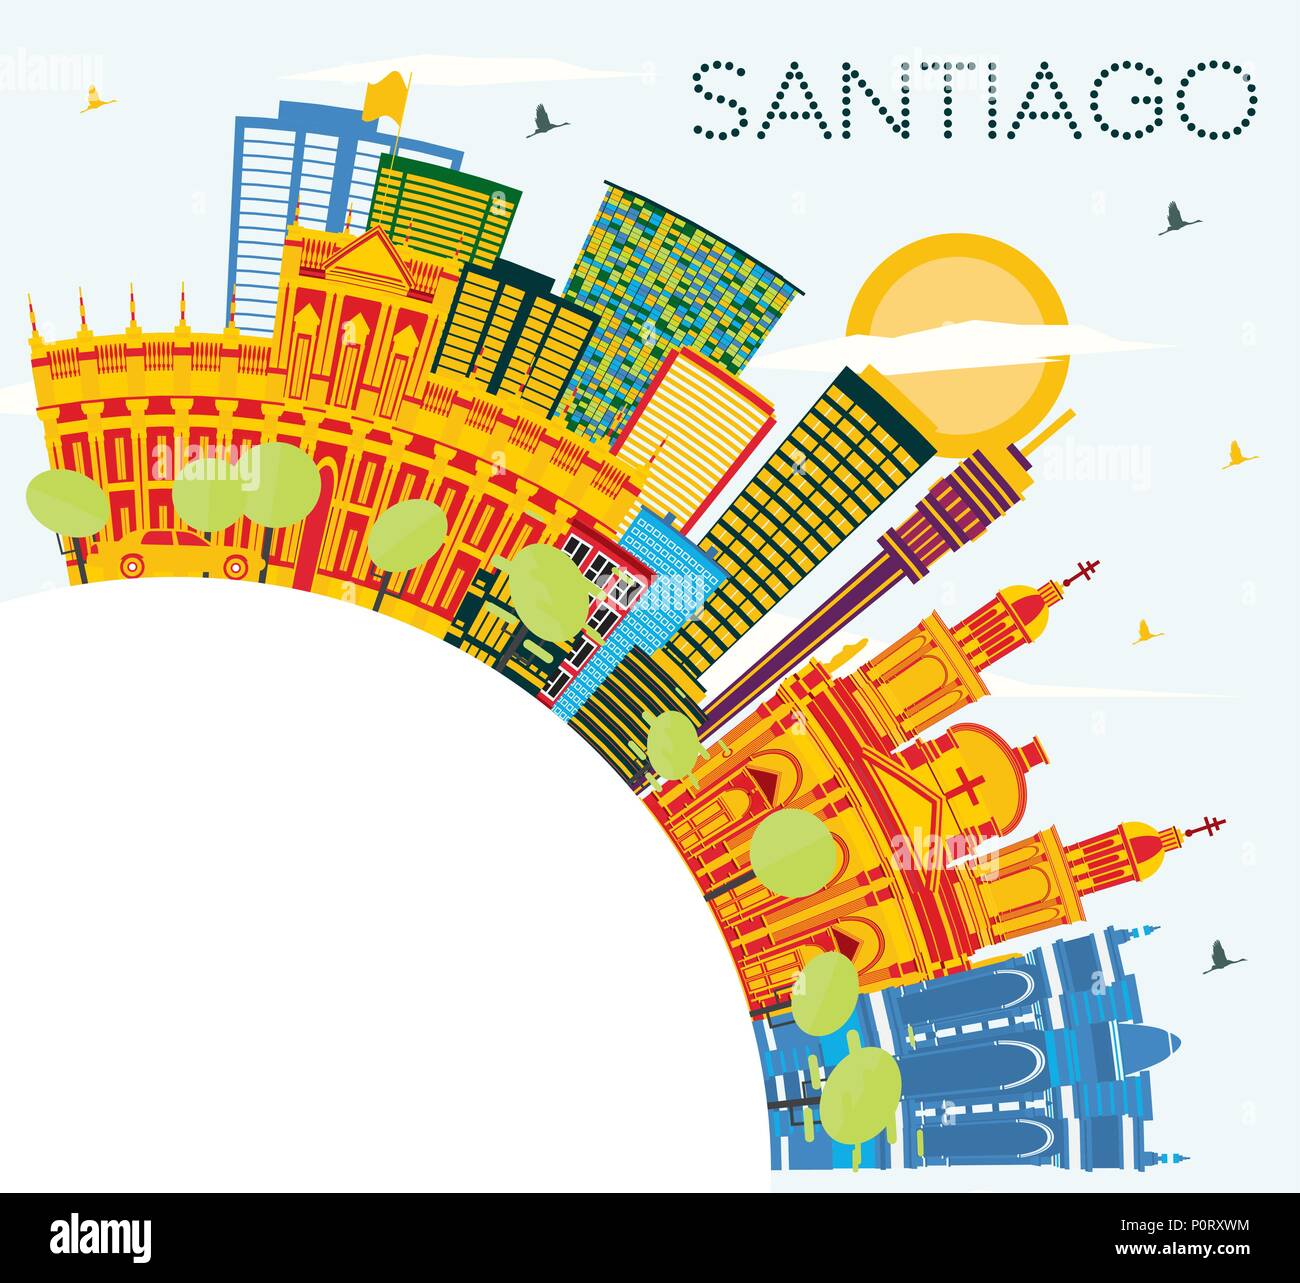 Santiago Chili avec toits de bâtiments, de couleur bleu ciel et l'espace de copie. Vector Illustration. Les voyages d'affaires et tourisme Concept avec des bâtiments modernes. Illustration de Vecteur